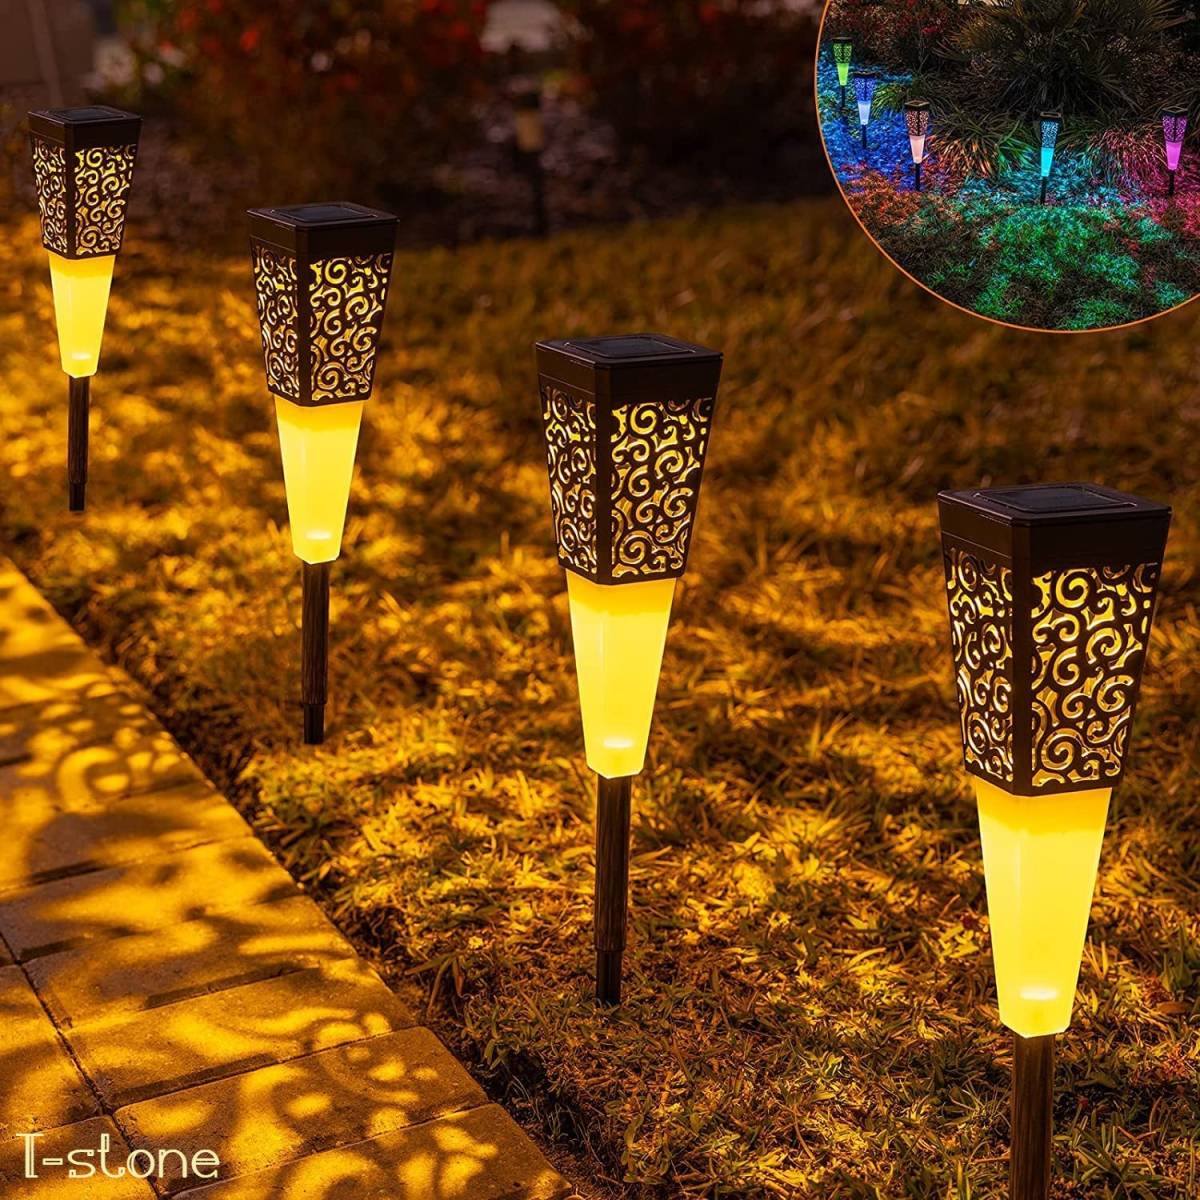 ソーラーライト ゆらぐ光のお洒落なアンティーク調デザイン 4個 幻想的 野外ライト ガーデンライト 太陽光充電 自動点灯消灯 雰囲気照明 